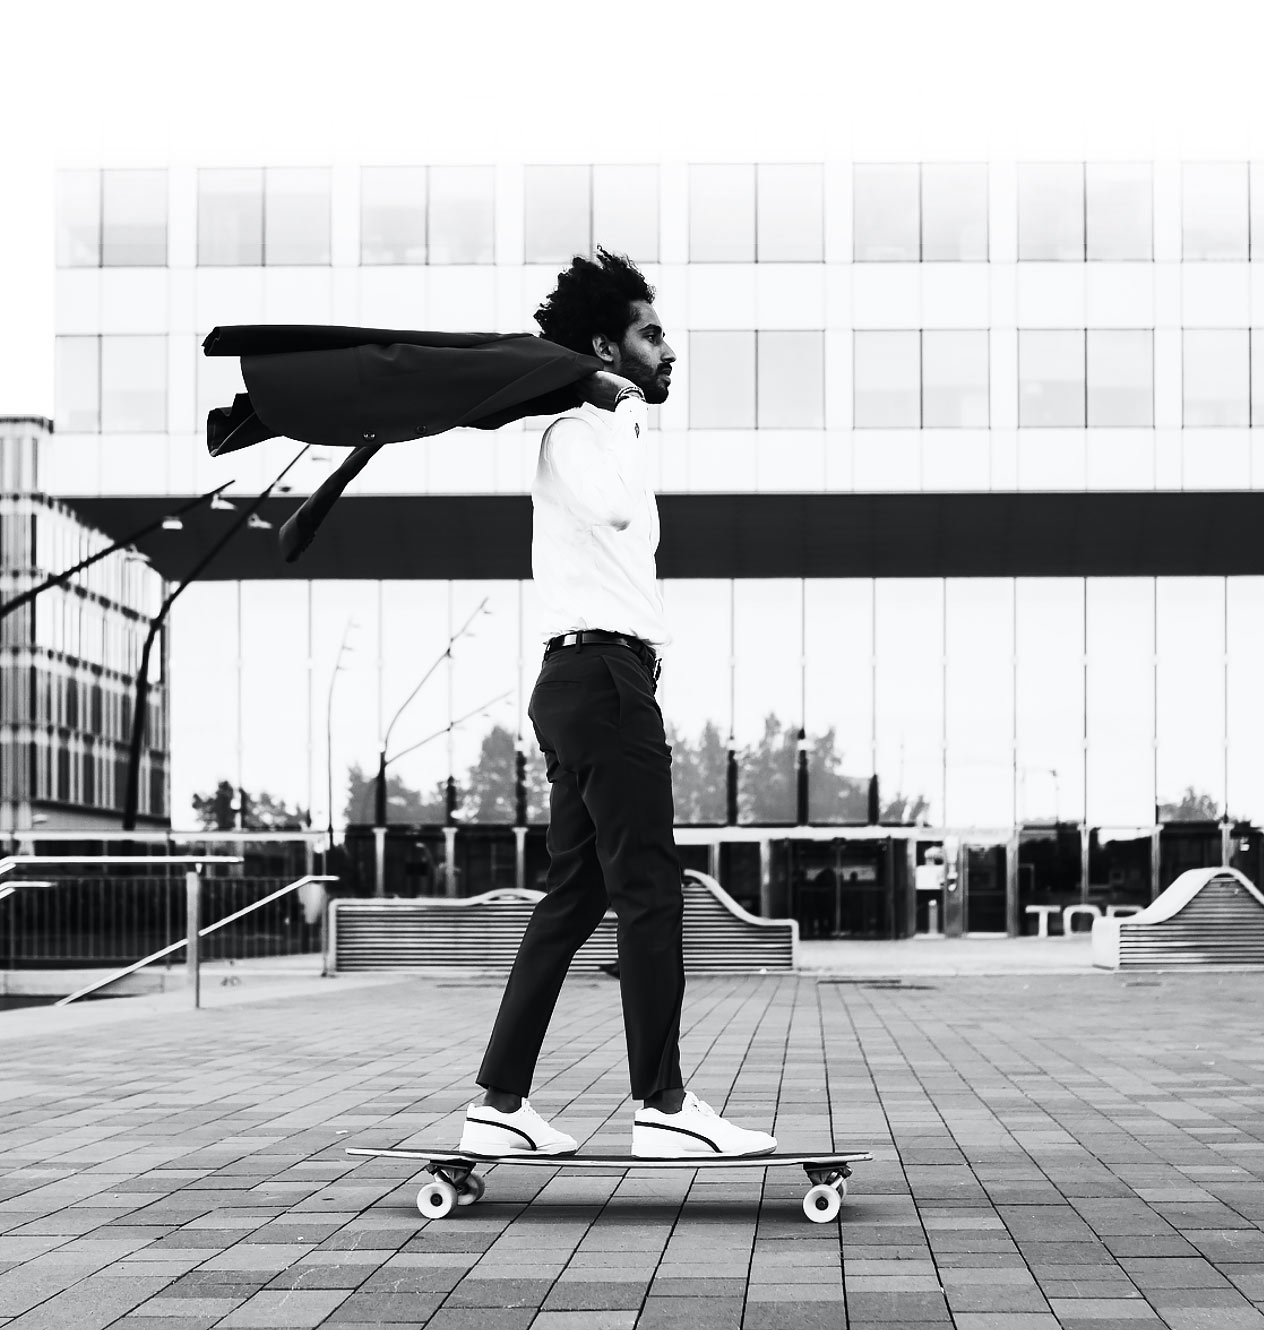 Uomo che fa skateboard attraverso la piazza